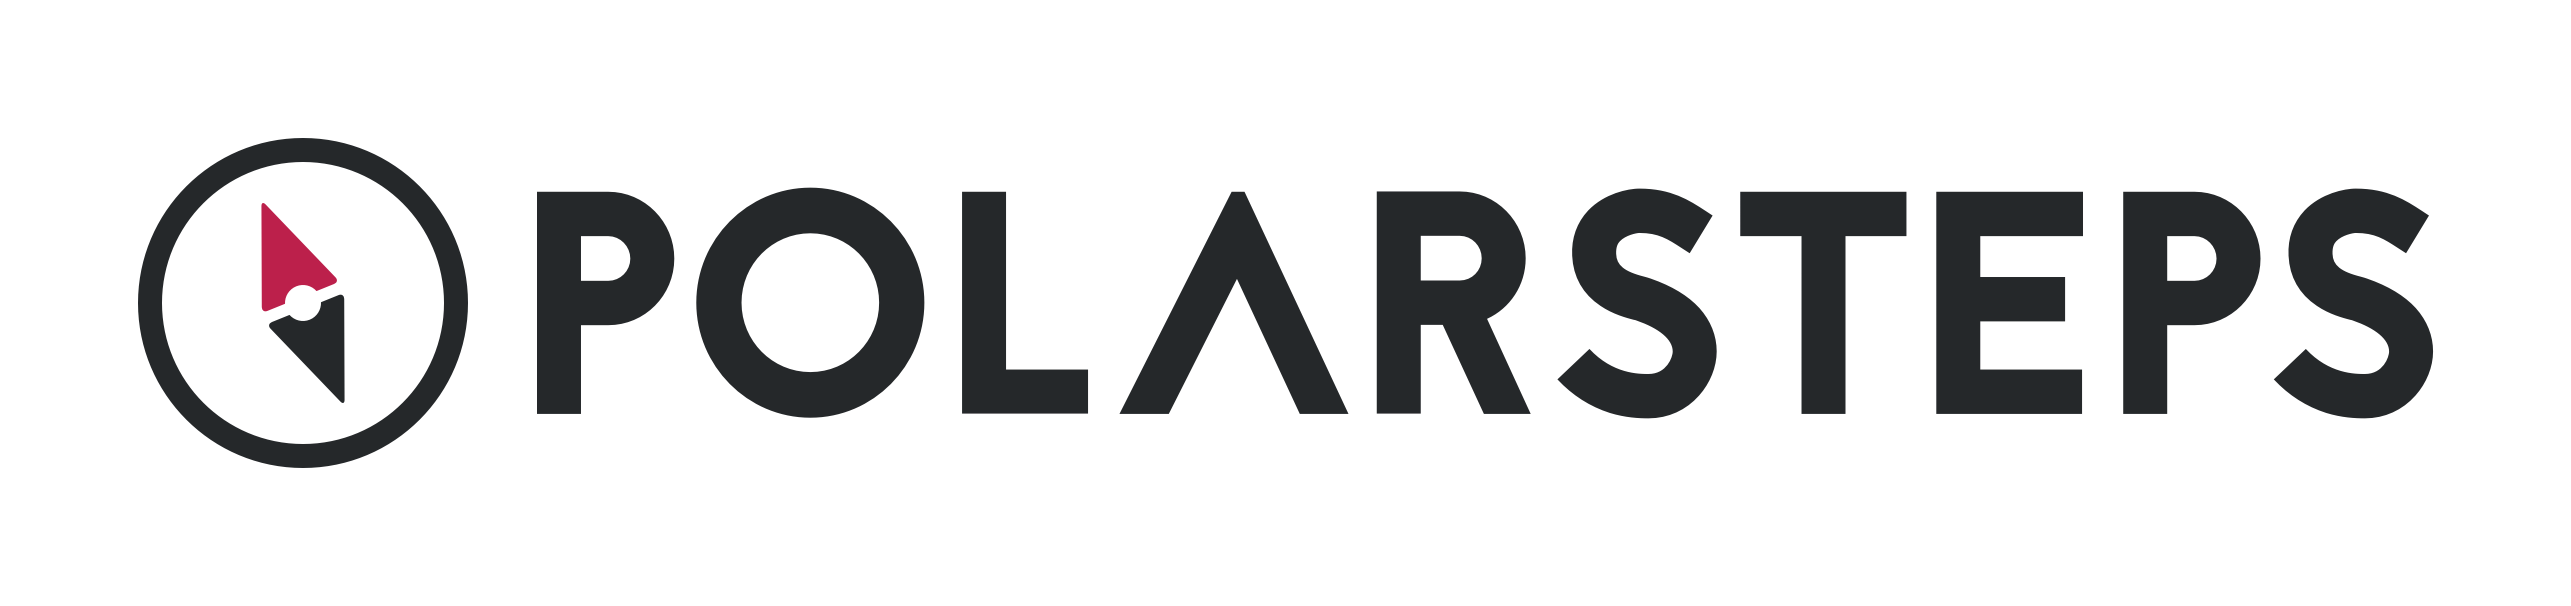 Polarsteps_Logo